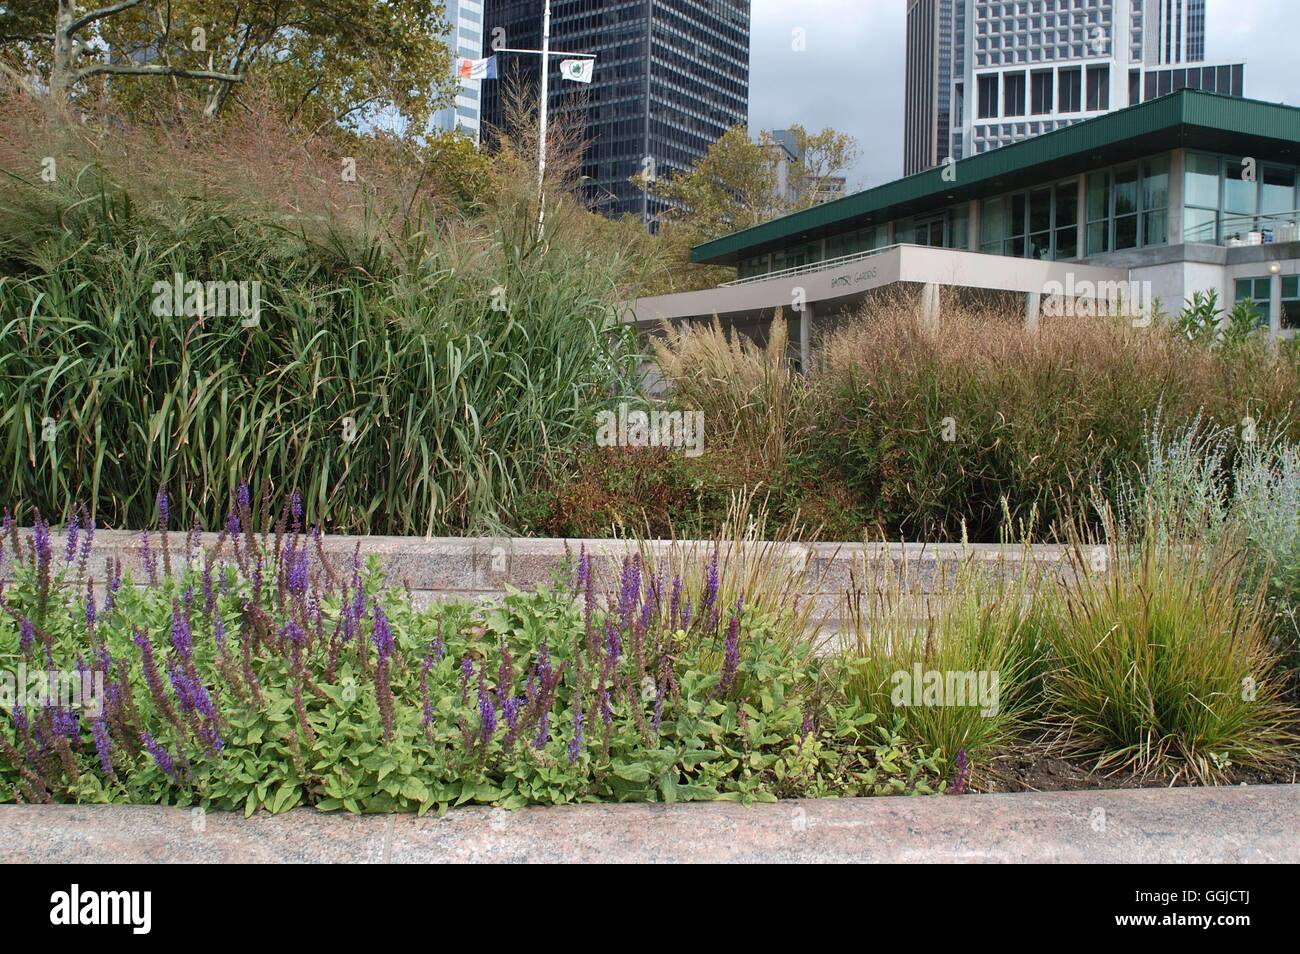 New York - Memorial Garden pour le 11 septembre 2001 conçu par Piet Oudolff MIW /P250488 Banque D'Images